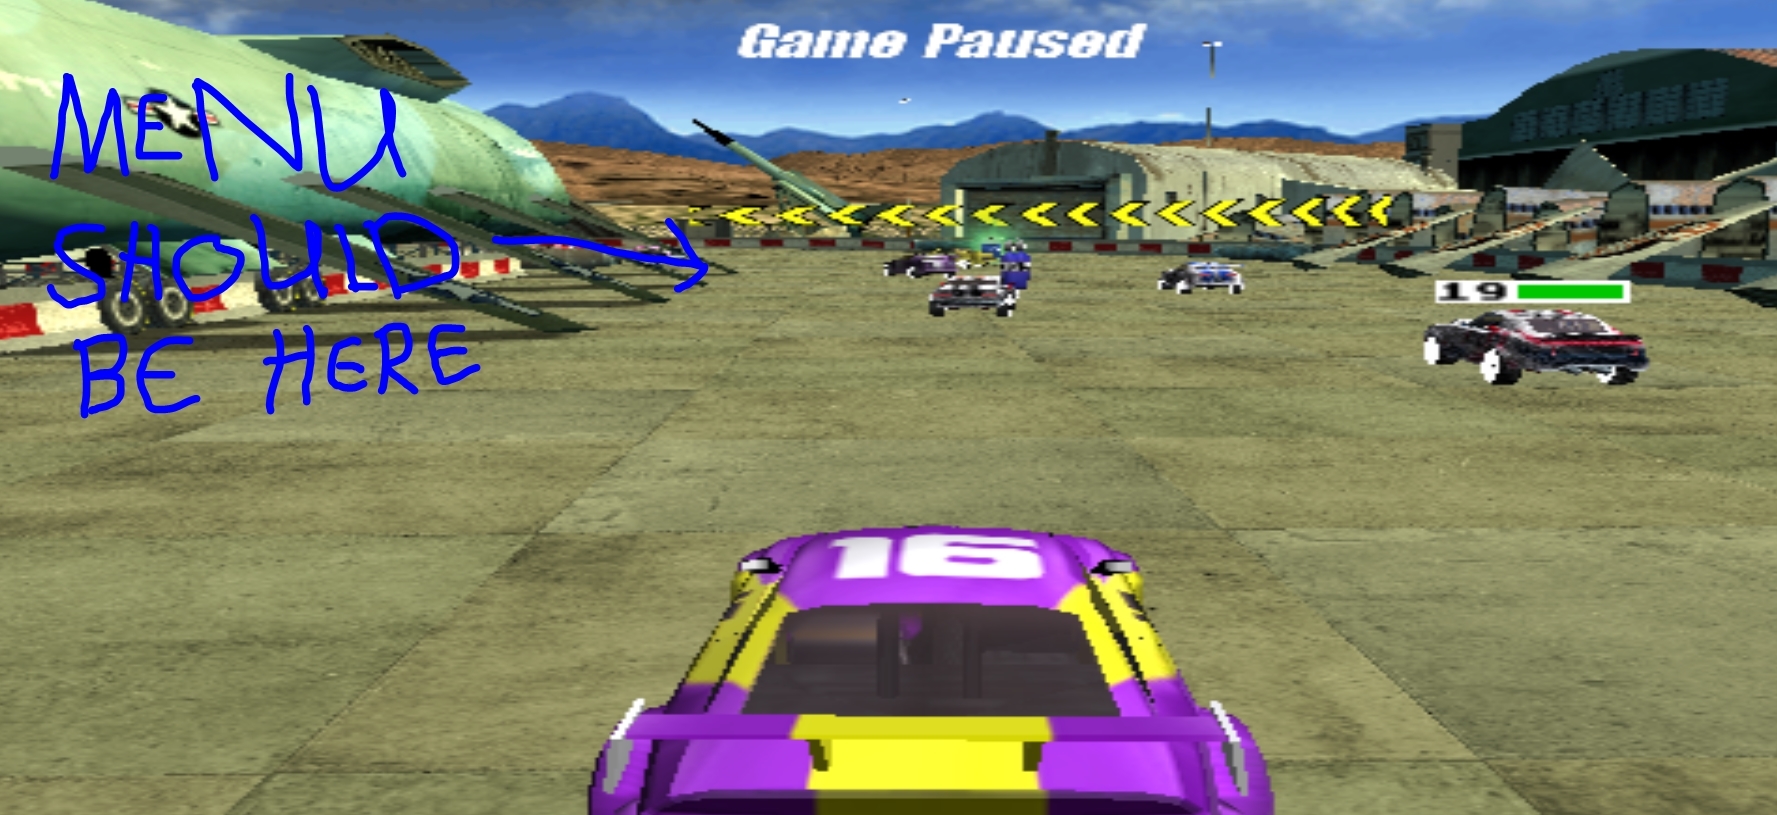 pcsx2 emulator running too fast